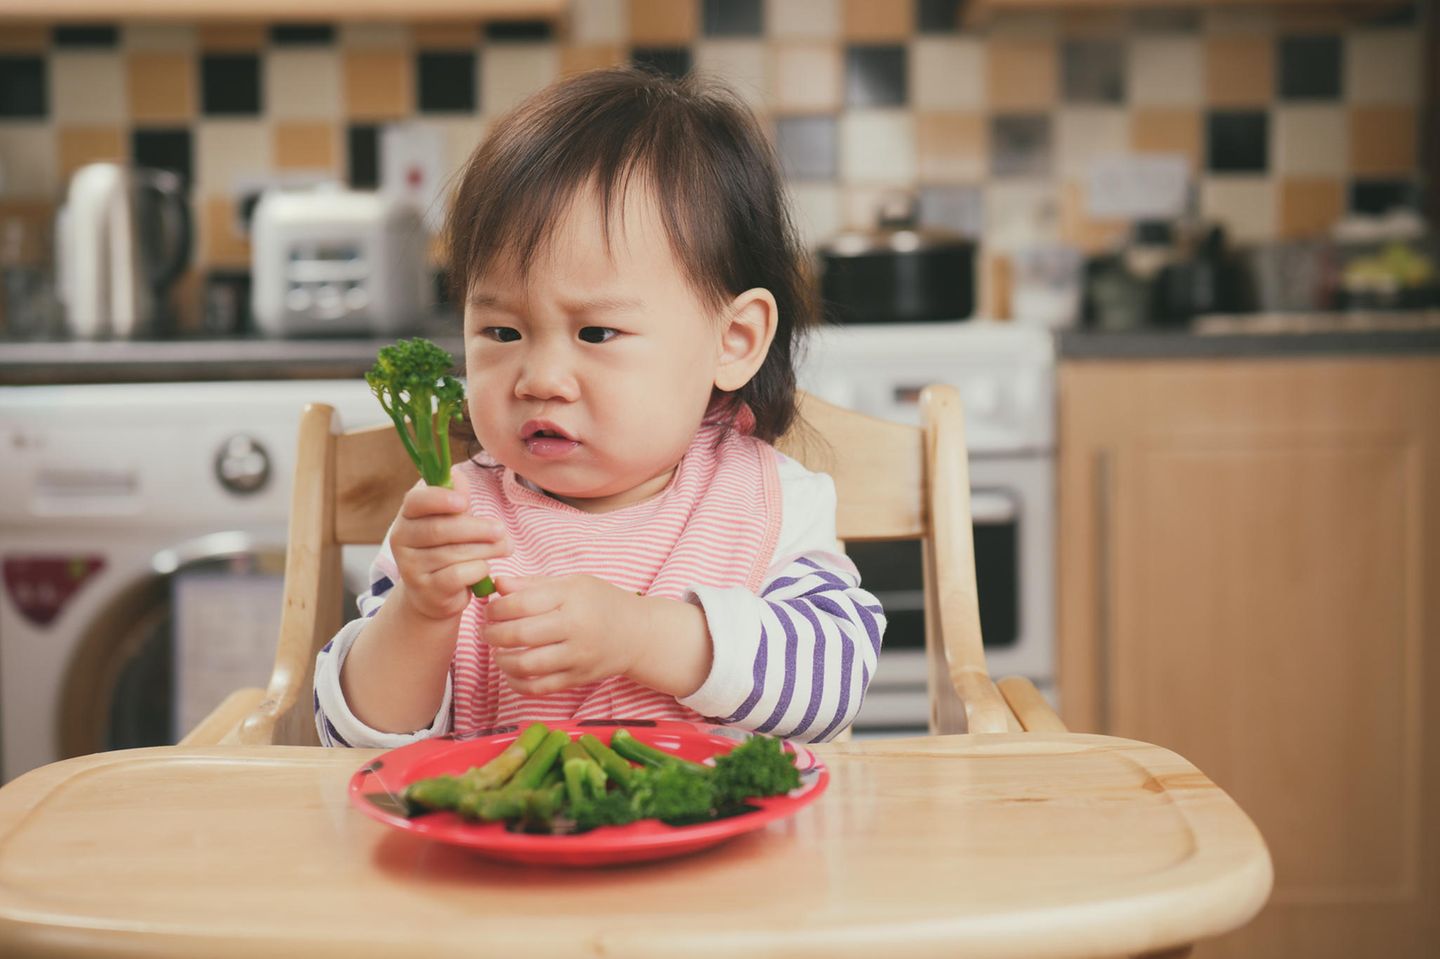 Kleindkind mag kein Gemüse